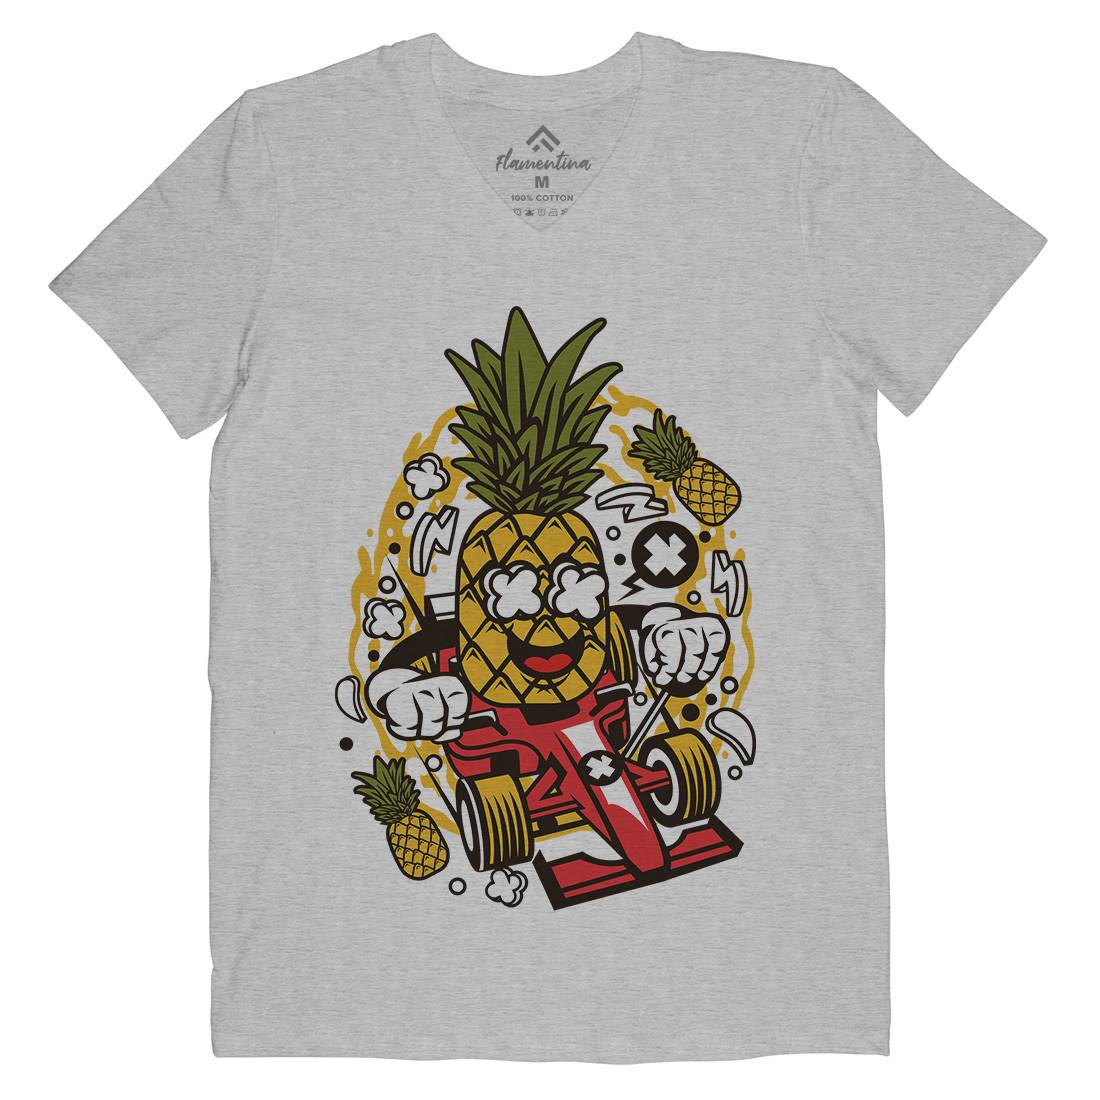 Pineapple Formula Racer Mens Organic V-Neck T-Shirt Sport C606